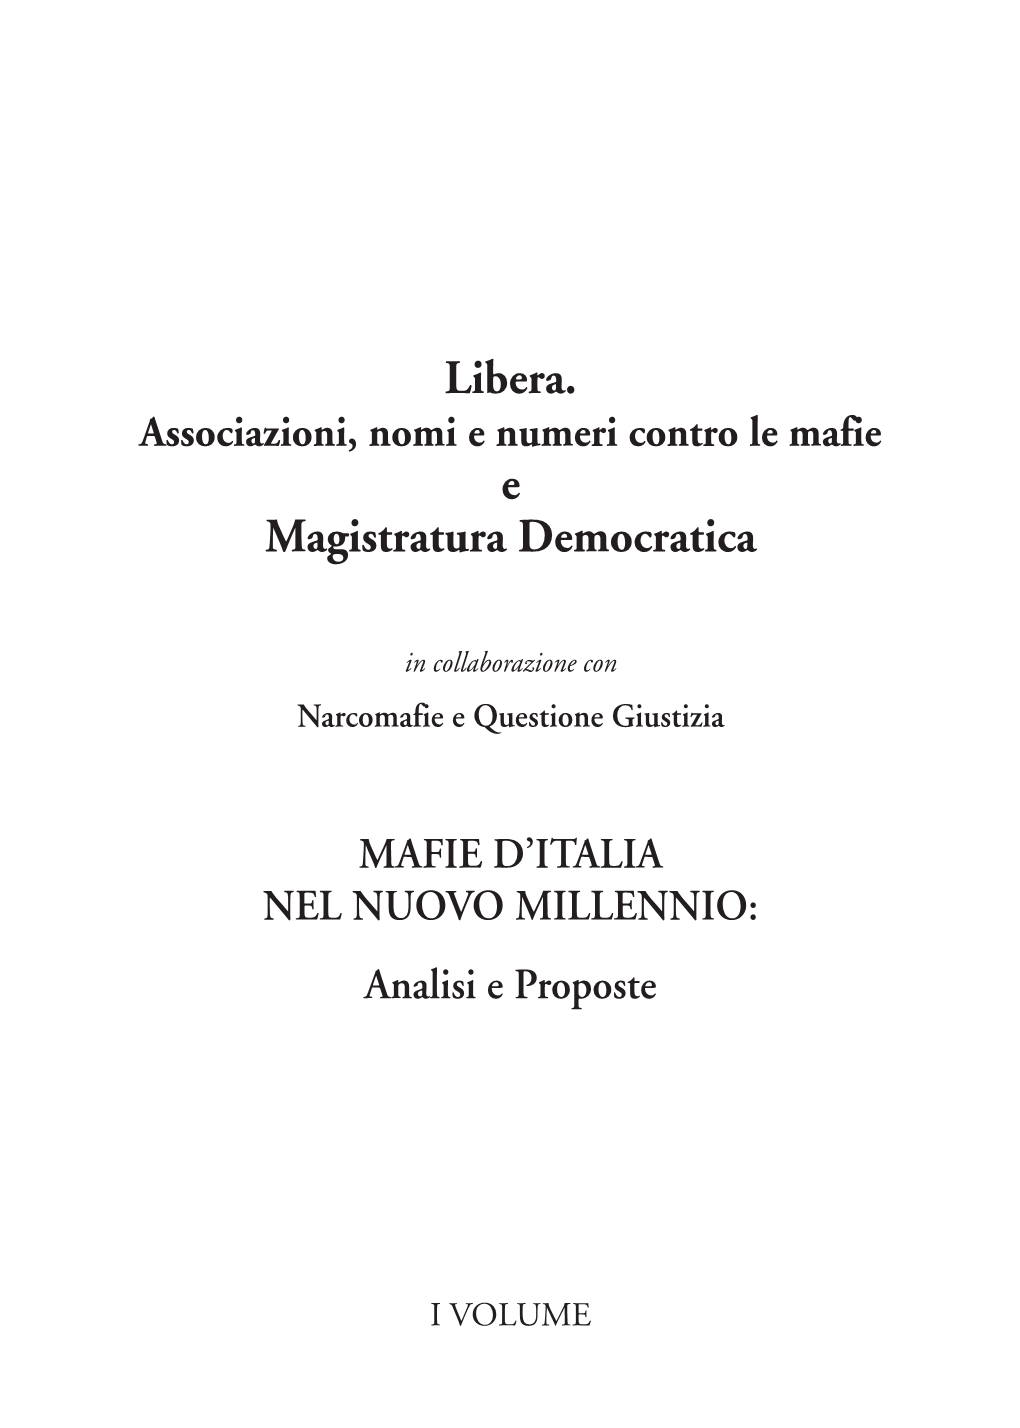 "Mafie D'italia Nel Nuovo Millennio" (Pdf)